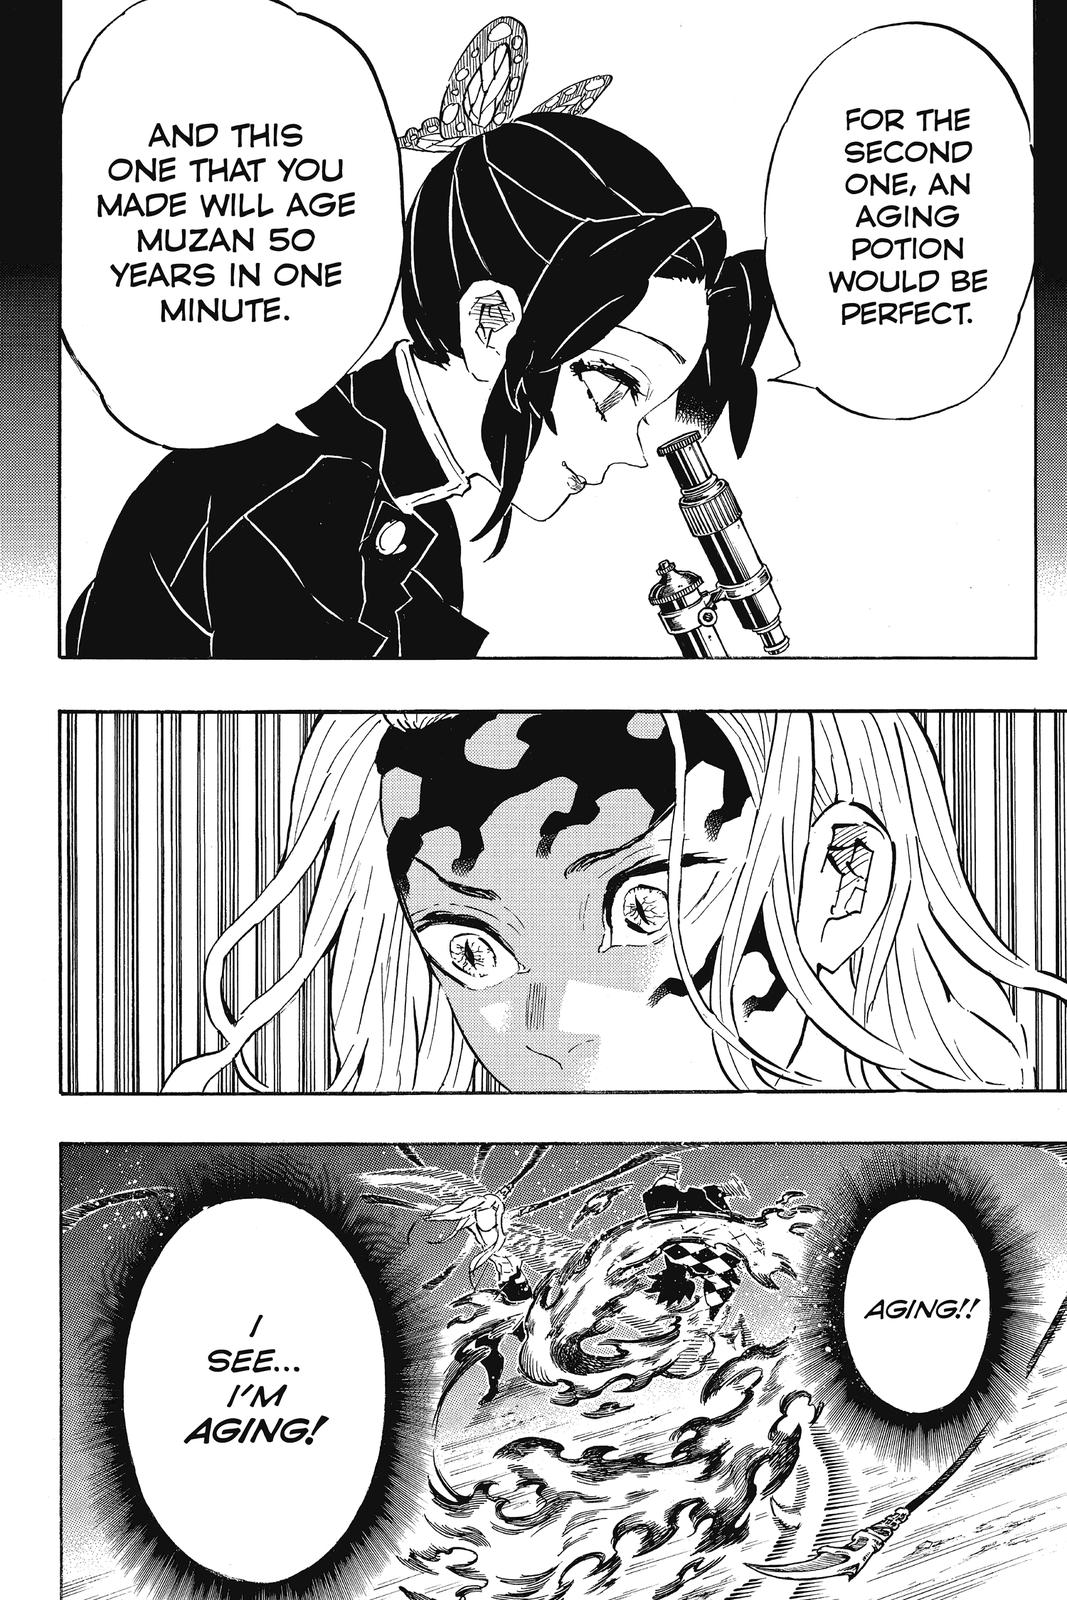 Demon Slayer Manga Manga Chapter - 193 - image 13